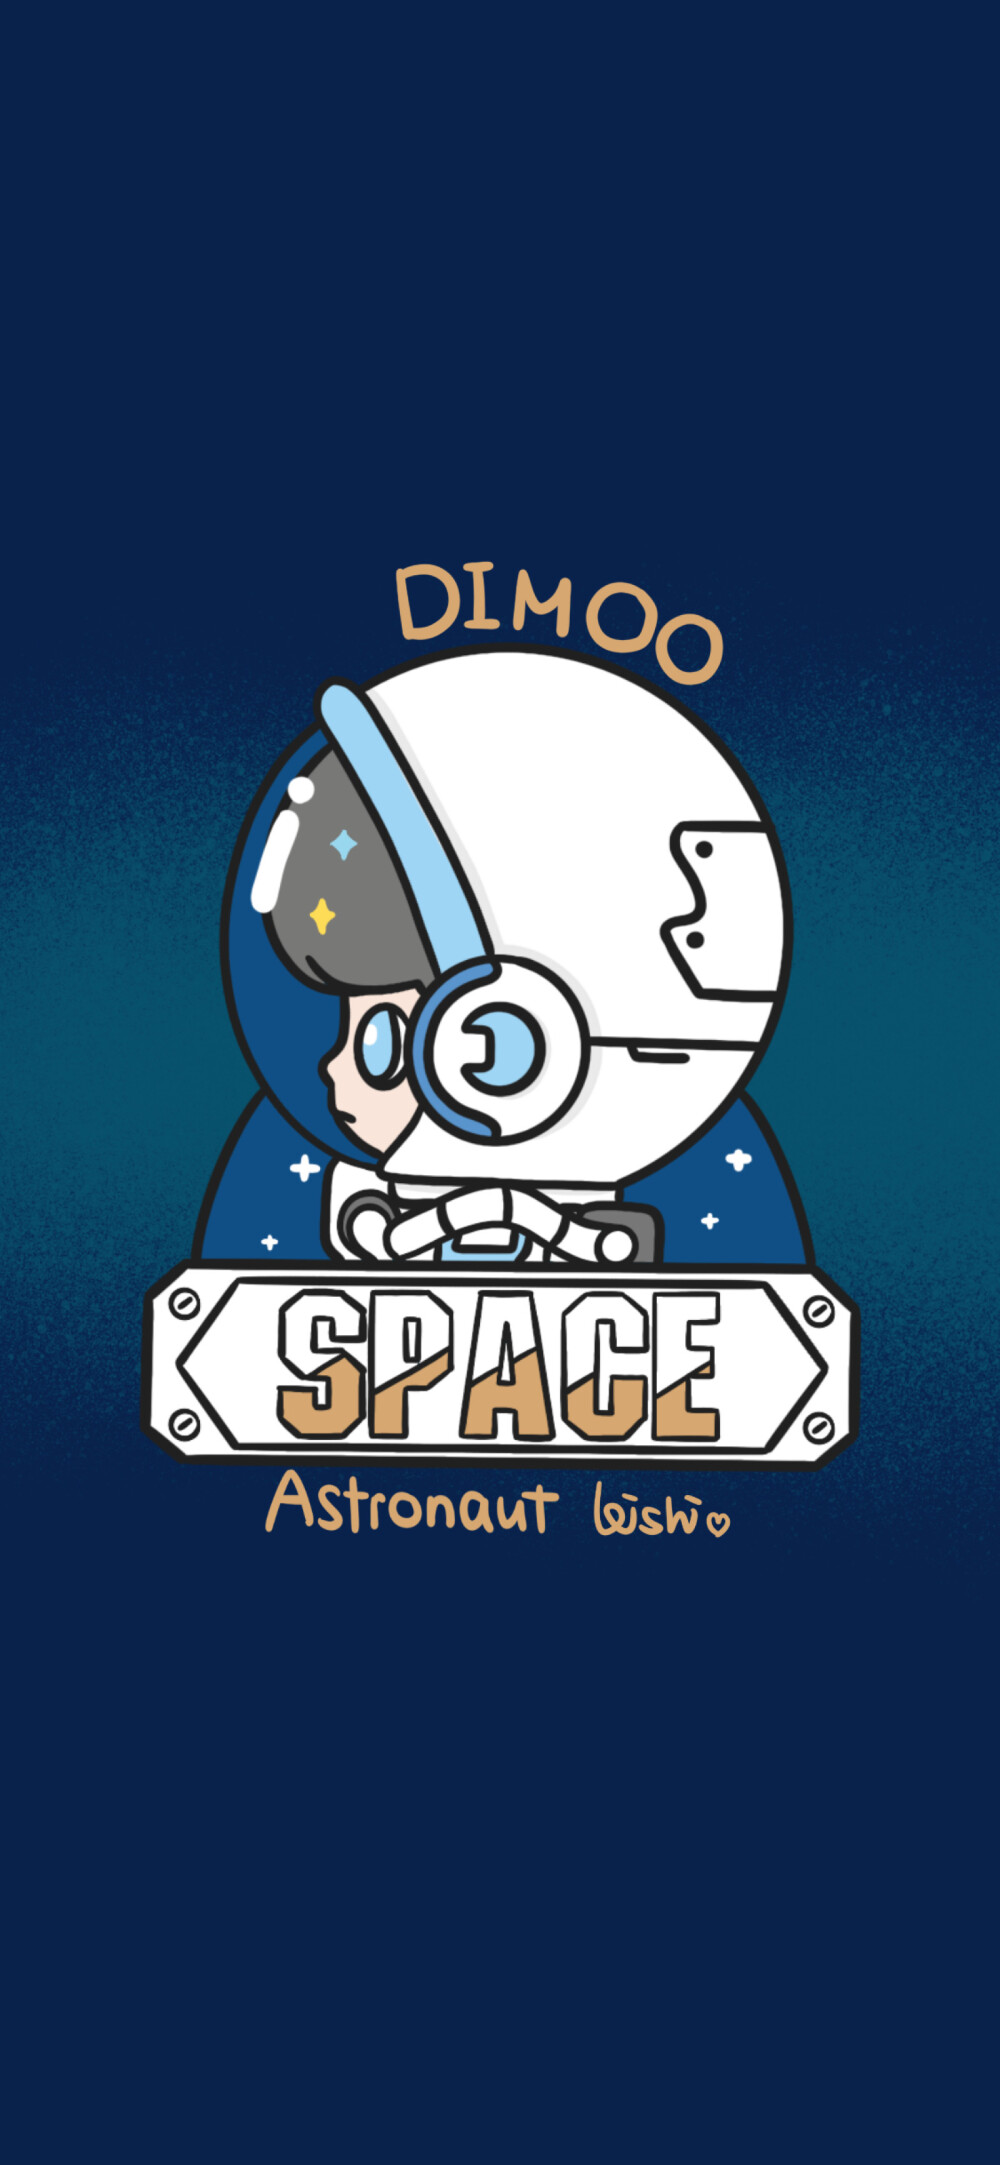 DIMOO太空旅行系列